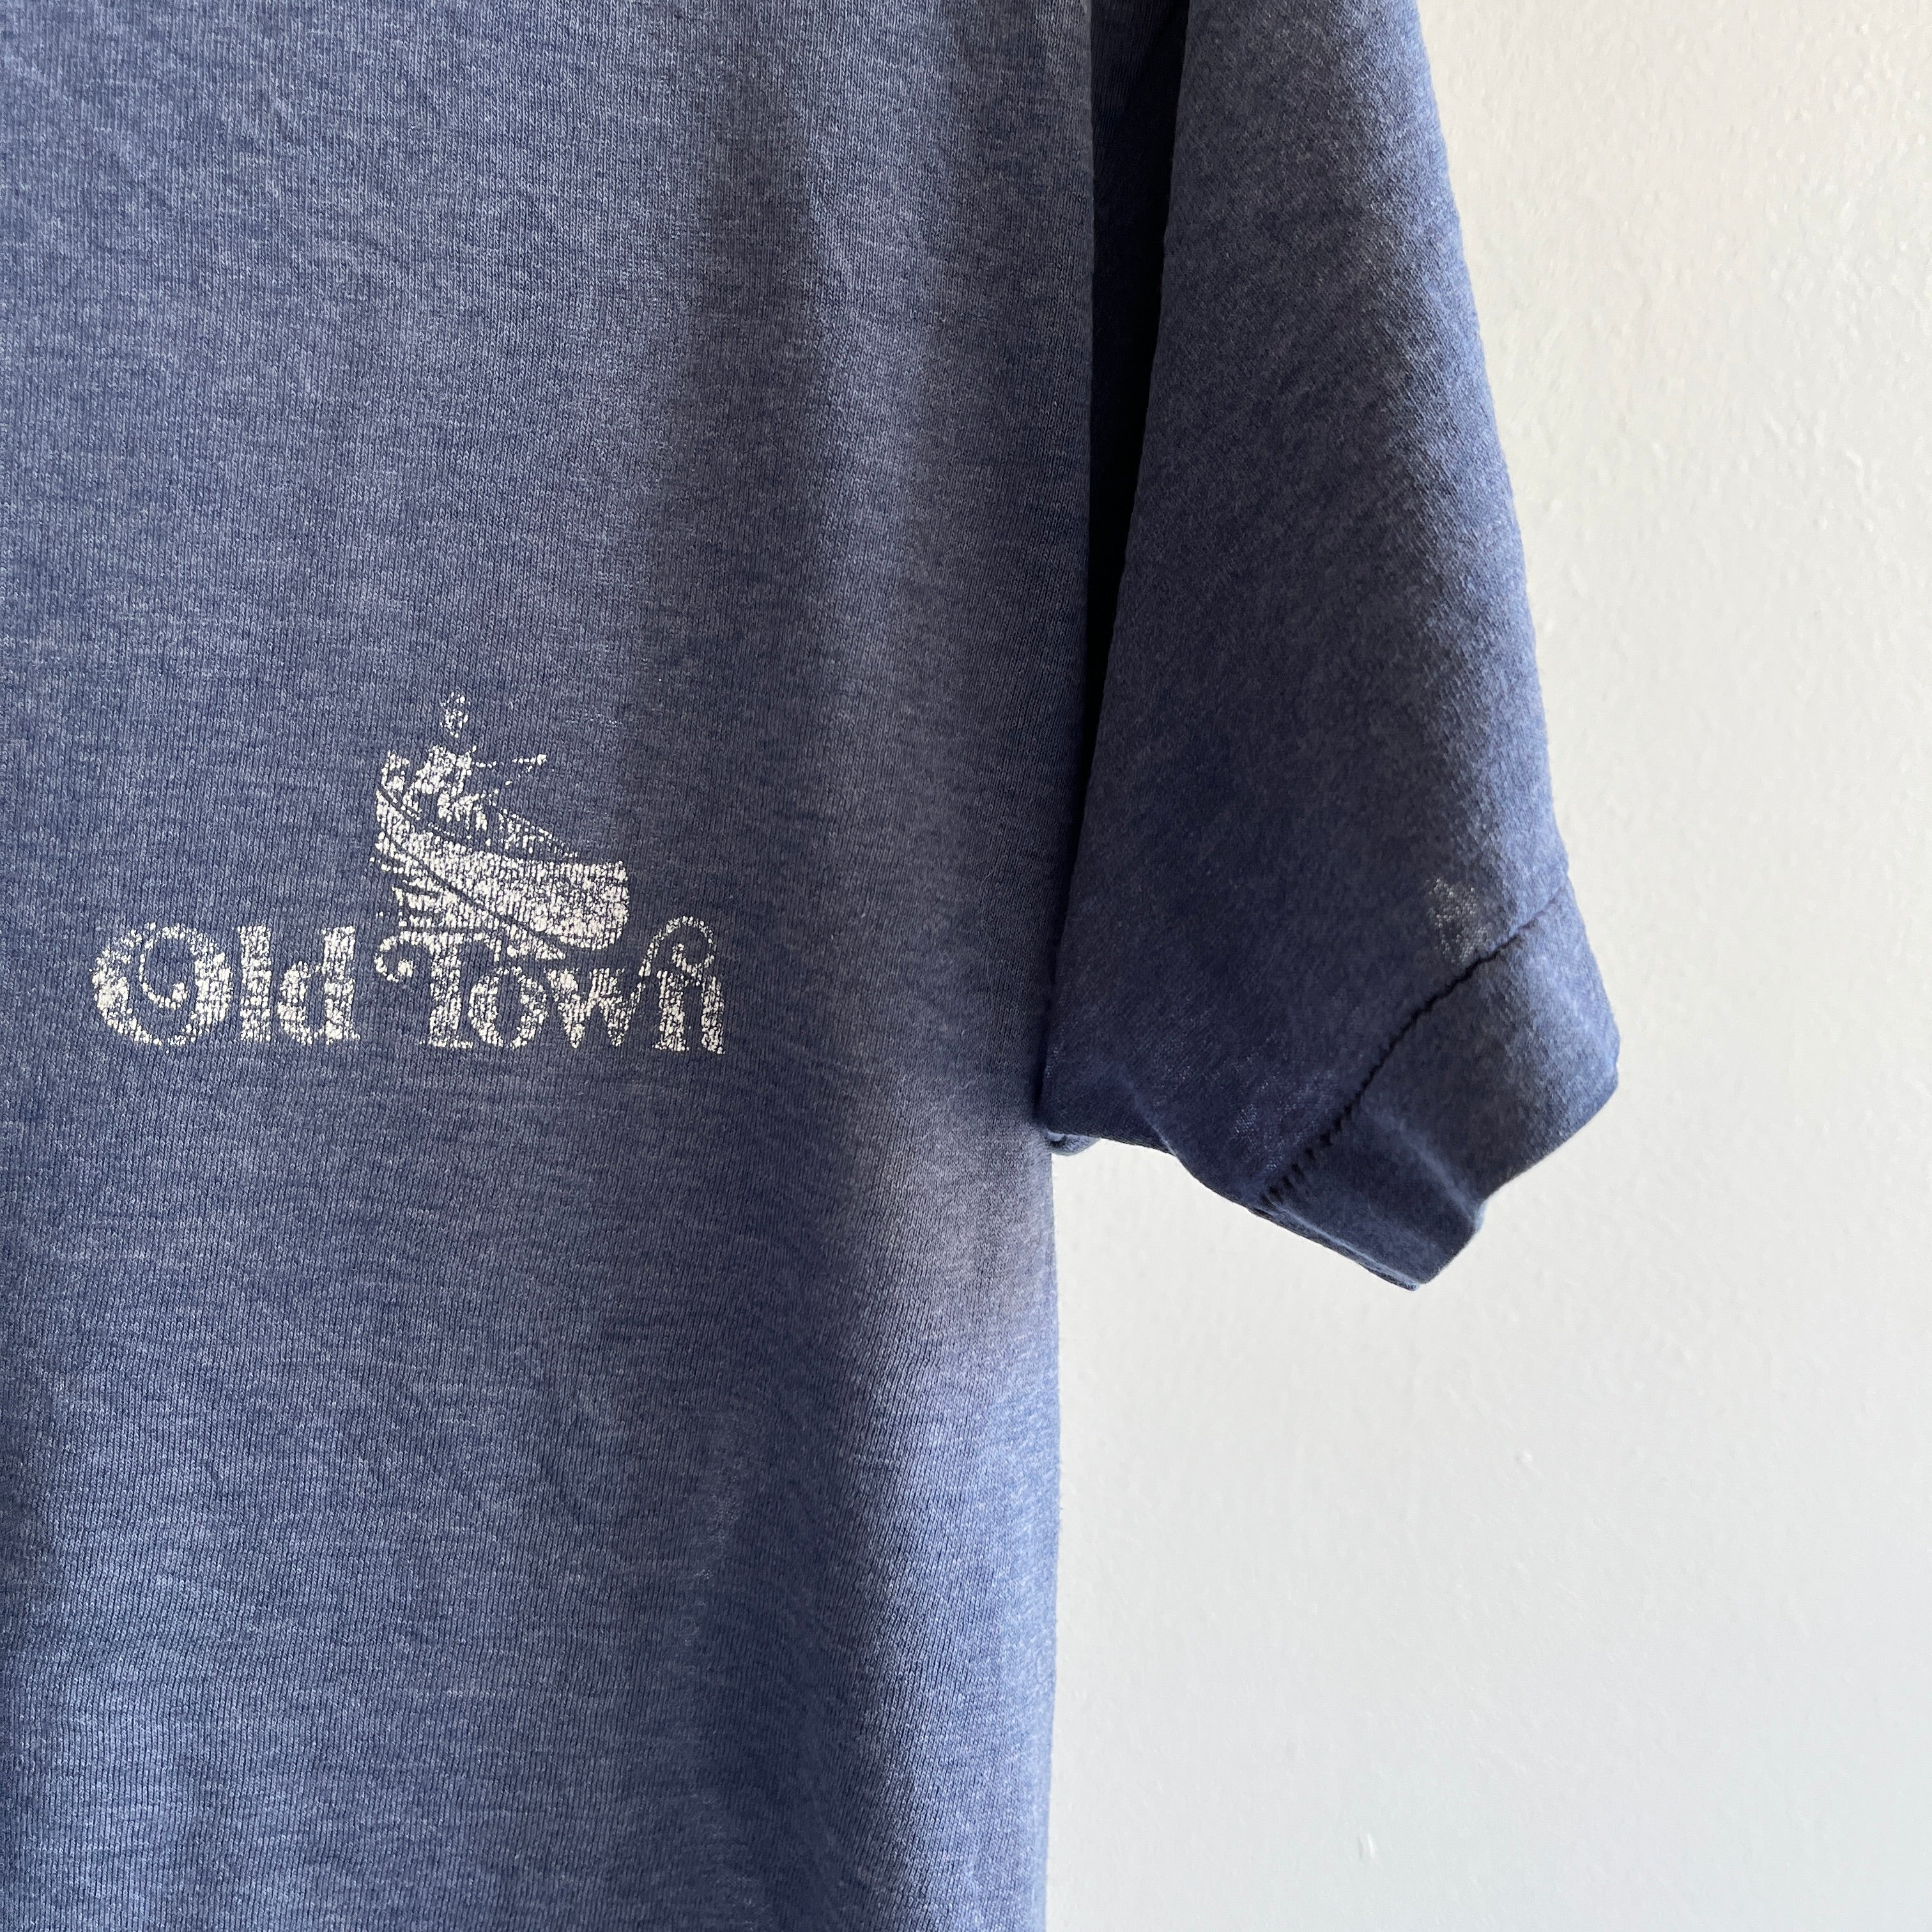 T-shirt Old Town fin et usé des années 1980